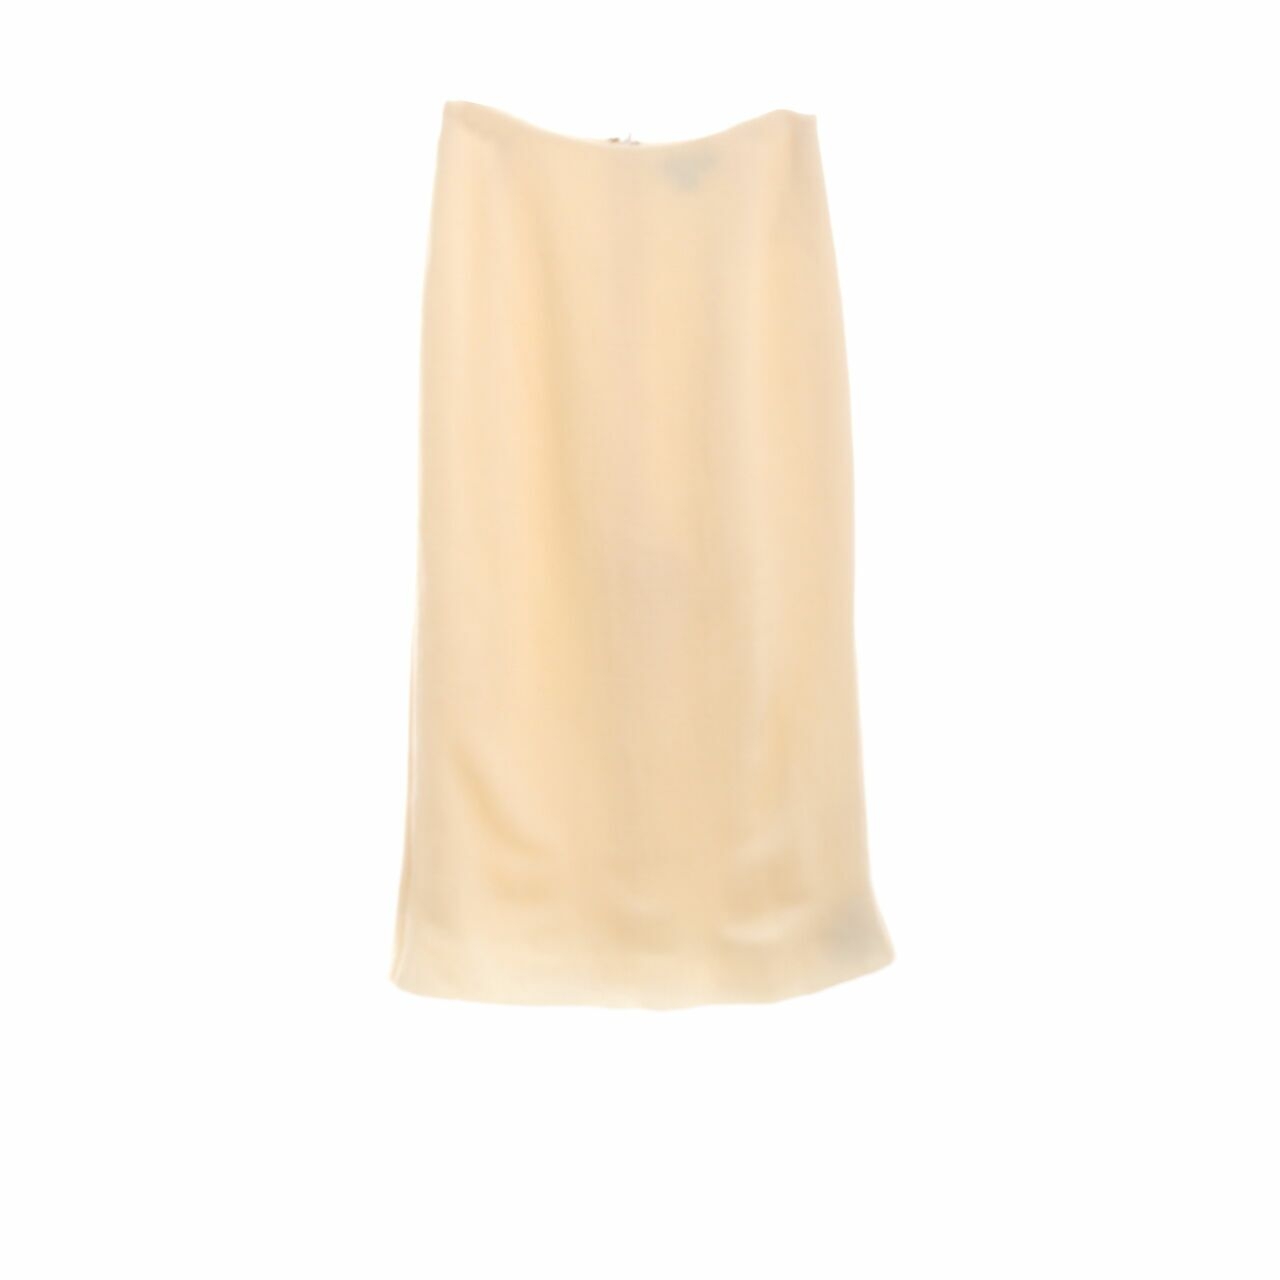 Ellery Cream Slit Maxi Skirt